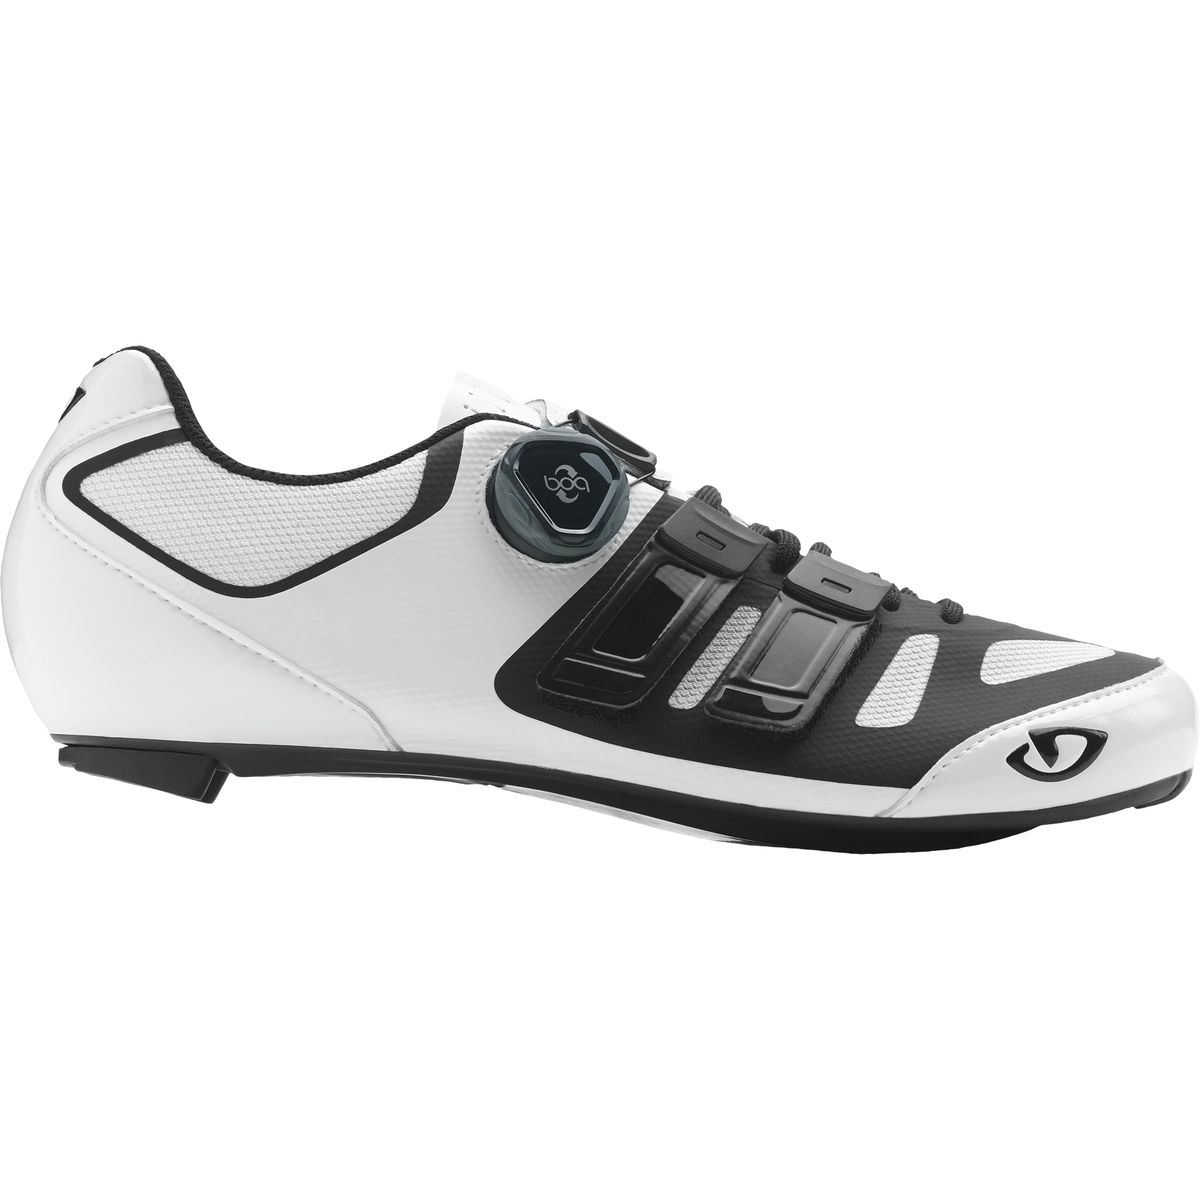 Giro Sentrie Techlace Cycling Shoe - Men's